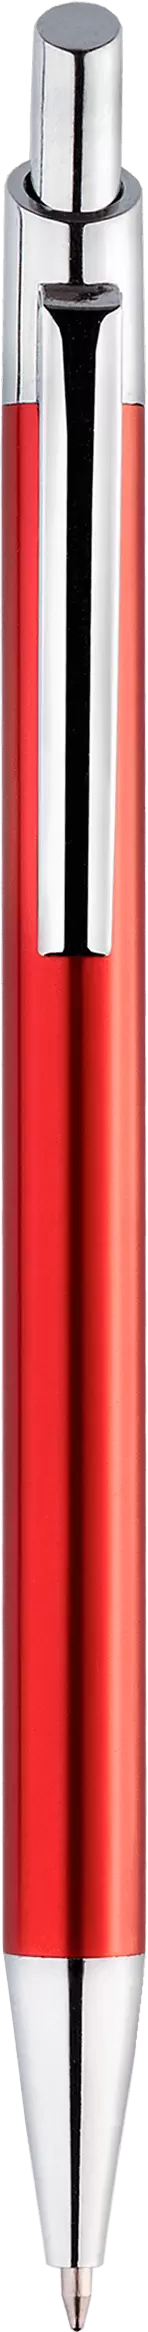 Ручка TIKKO Красная 2105-03